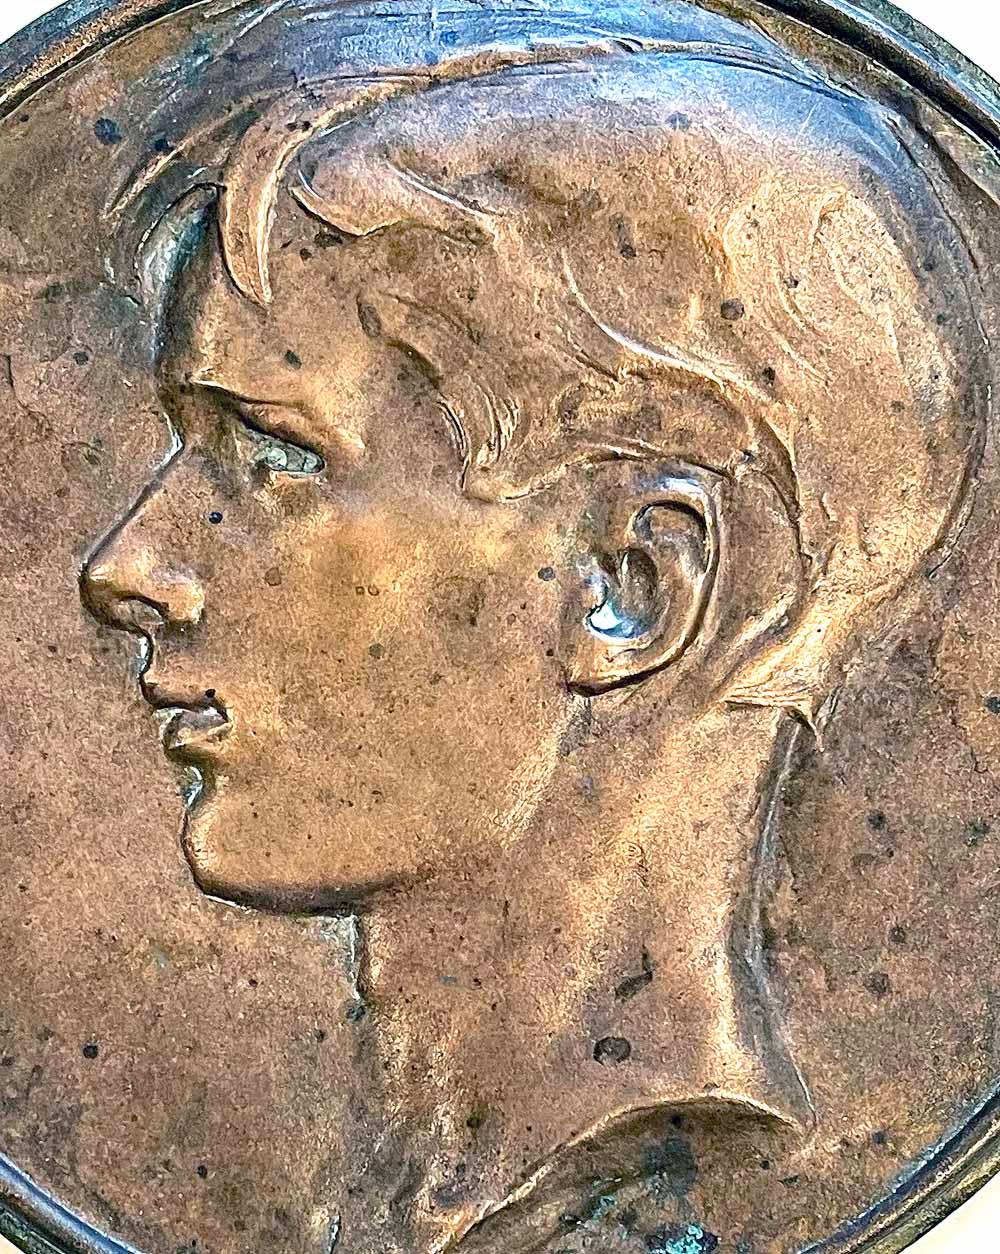 Magnifiquement modelée, coulée et patinée, cette rondelle en bronze représente la tête de profil d'un jeune homme aux cheveux tombant sur le front, au nez fort et à la bouche sensible, probablement sculptée à la fin des années 1920 ou dans les